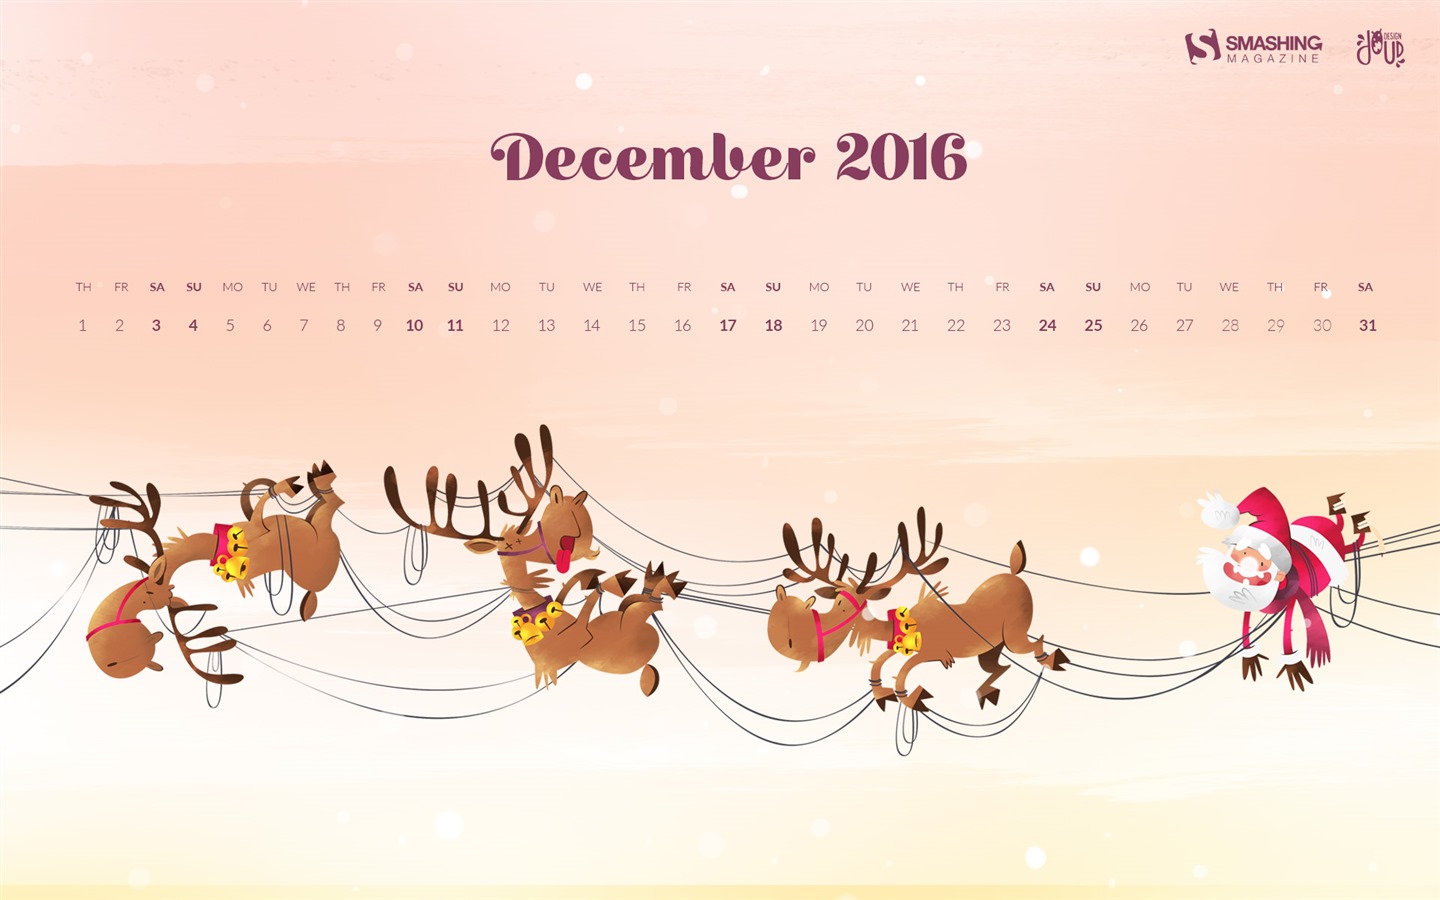 December 2016 Christmas theme calendar wallpaper (1) #13 - 1440x900